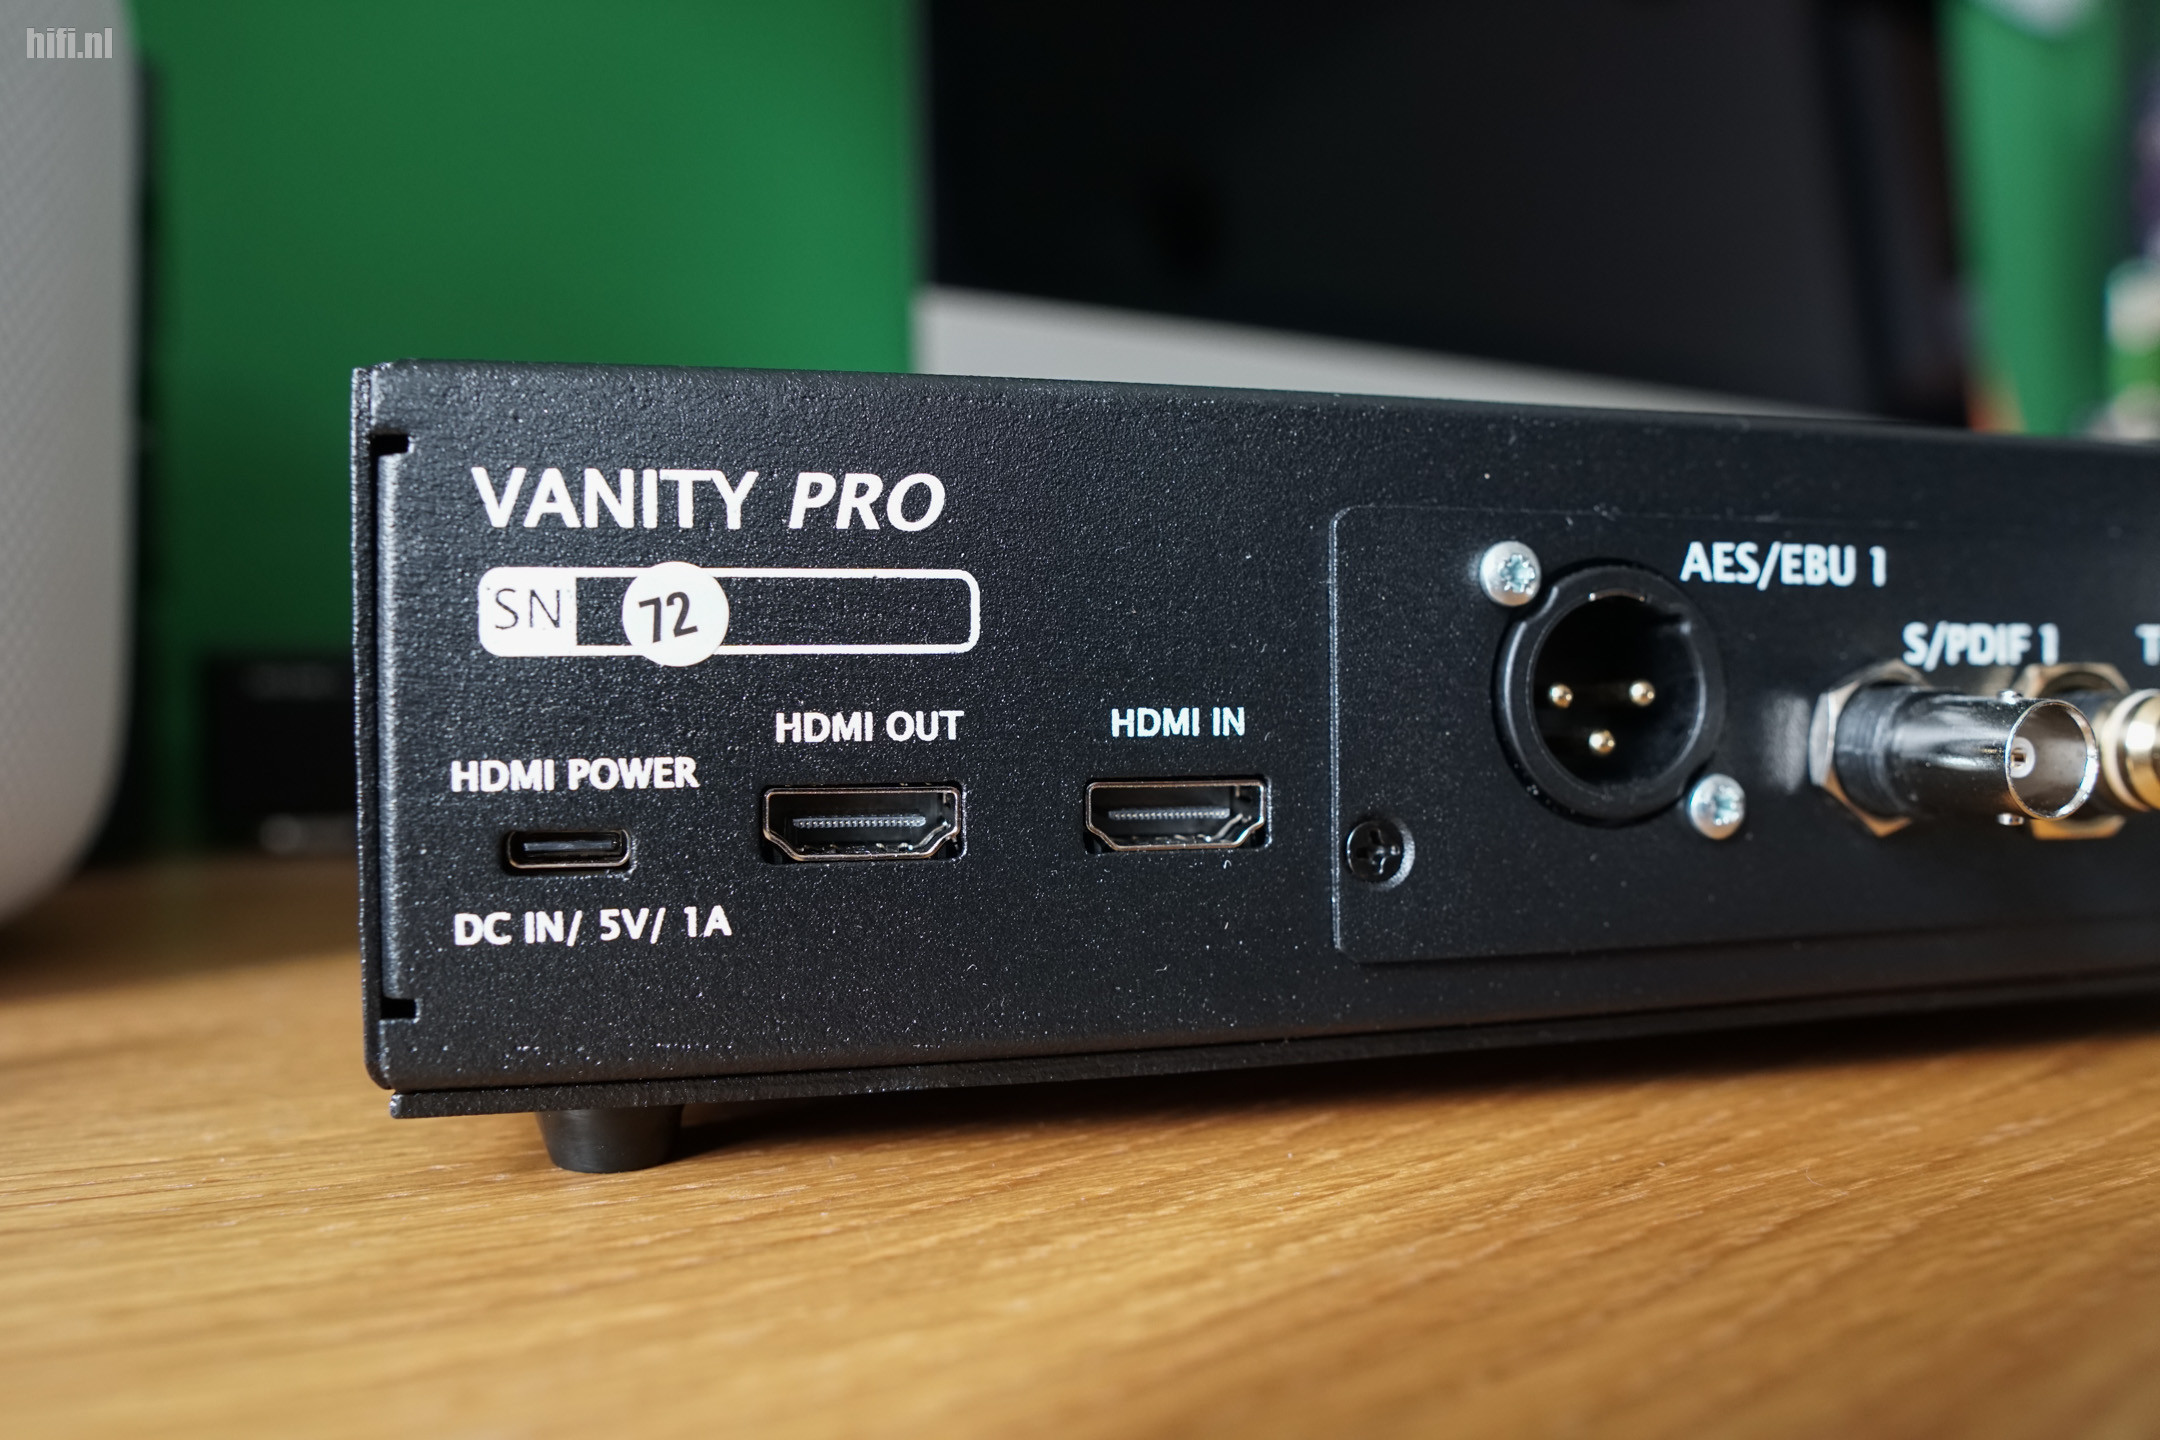 Audiopraise VanityPro Review (HDMI Audio Extractor)